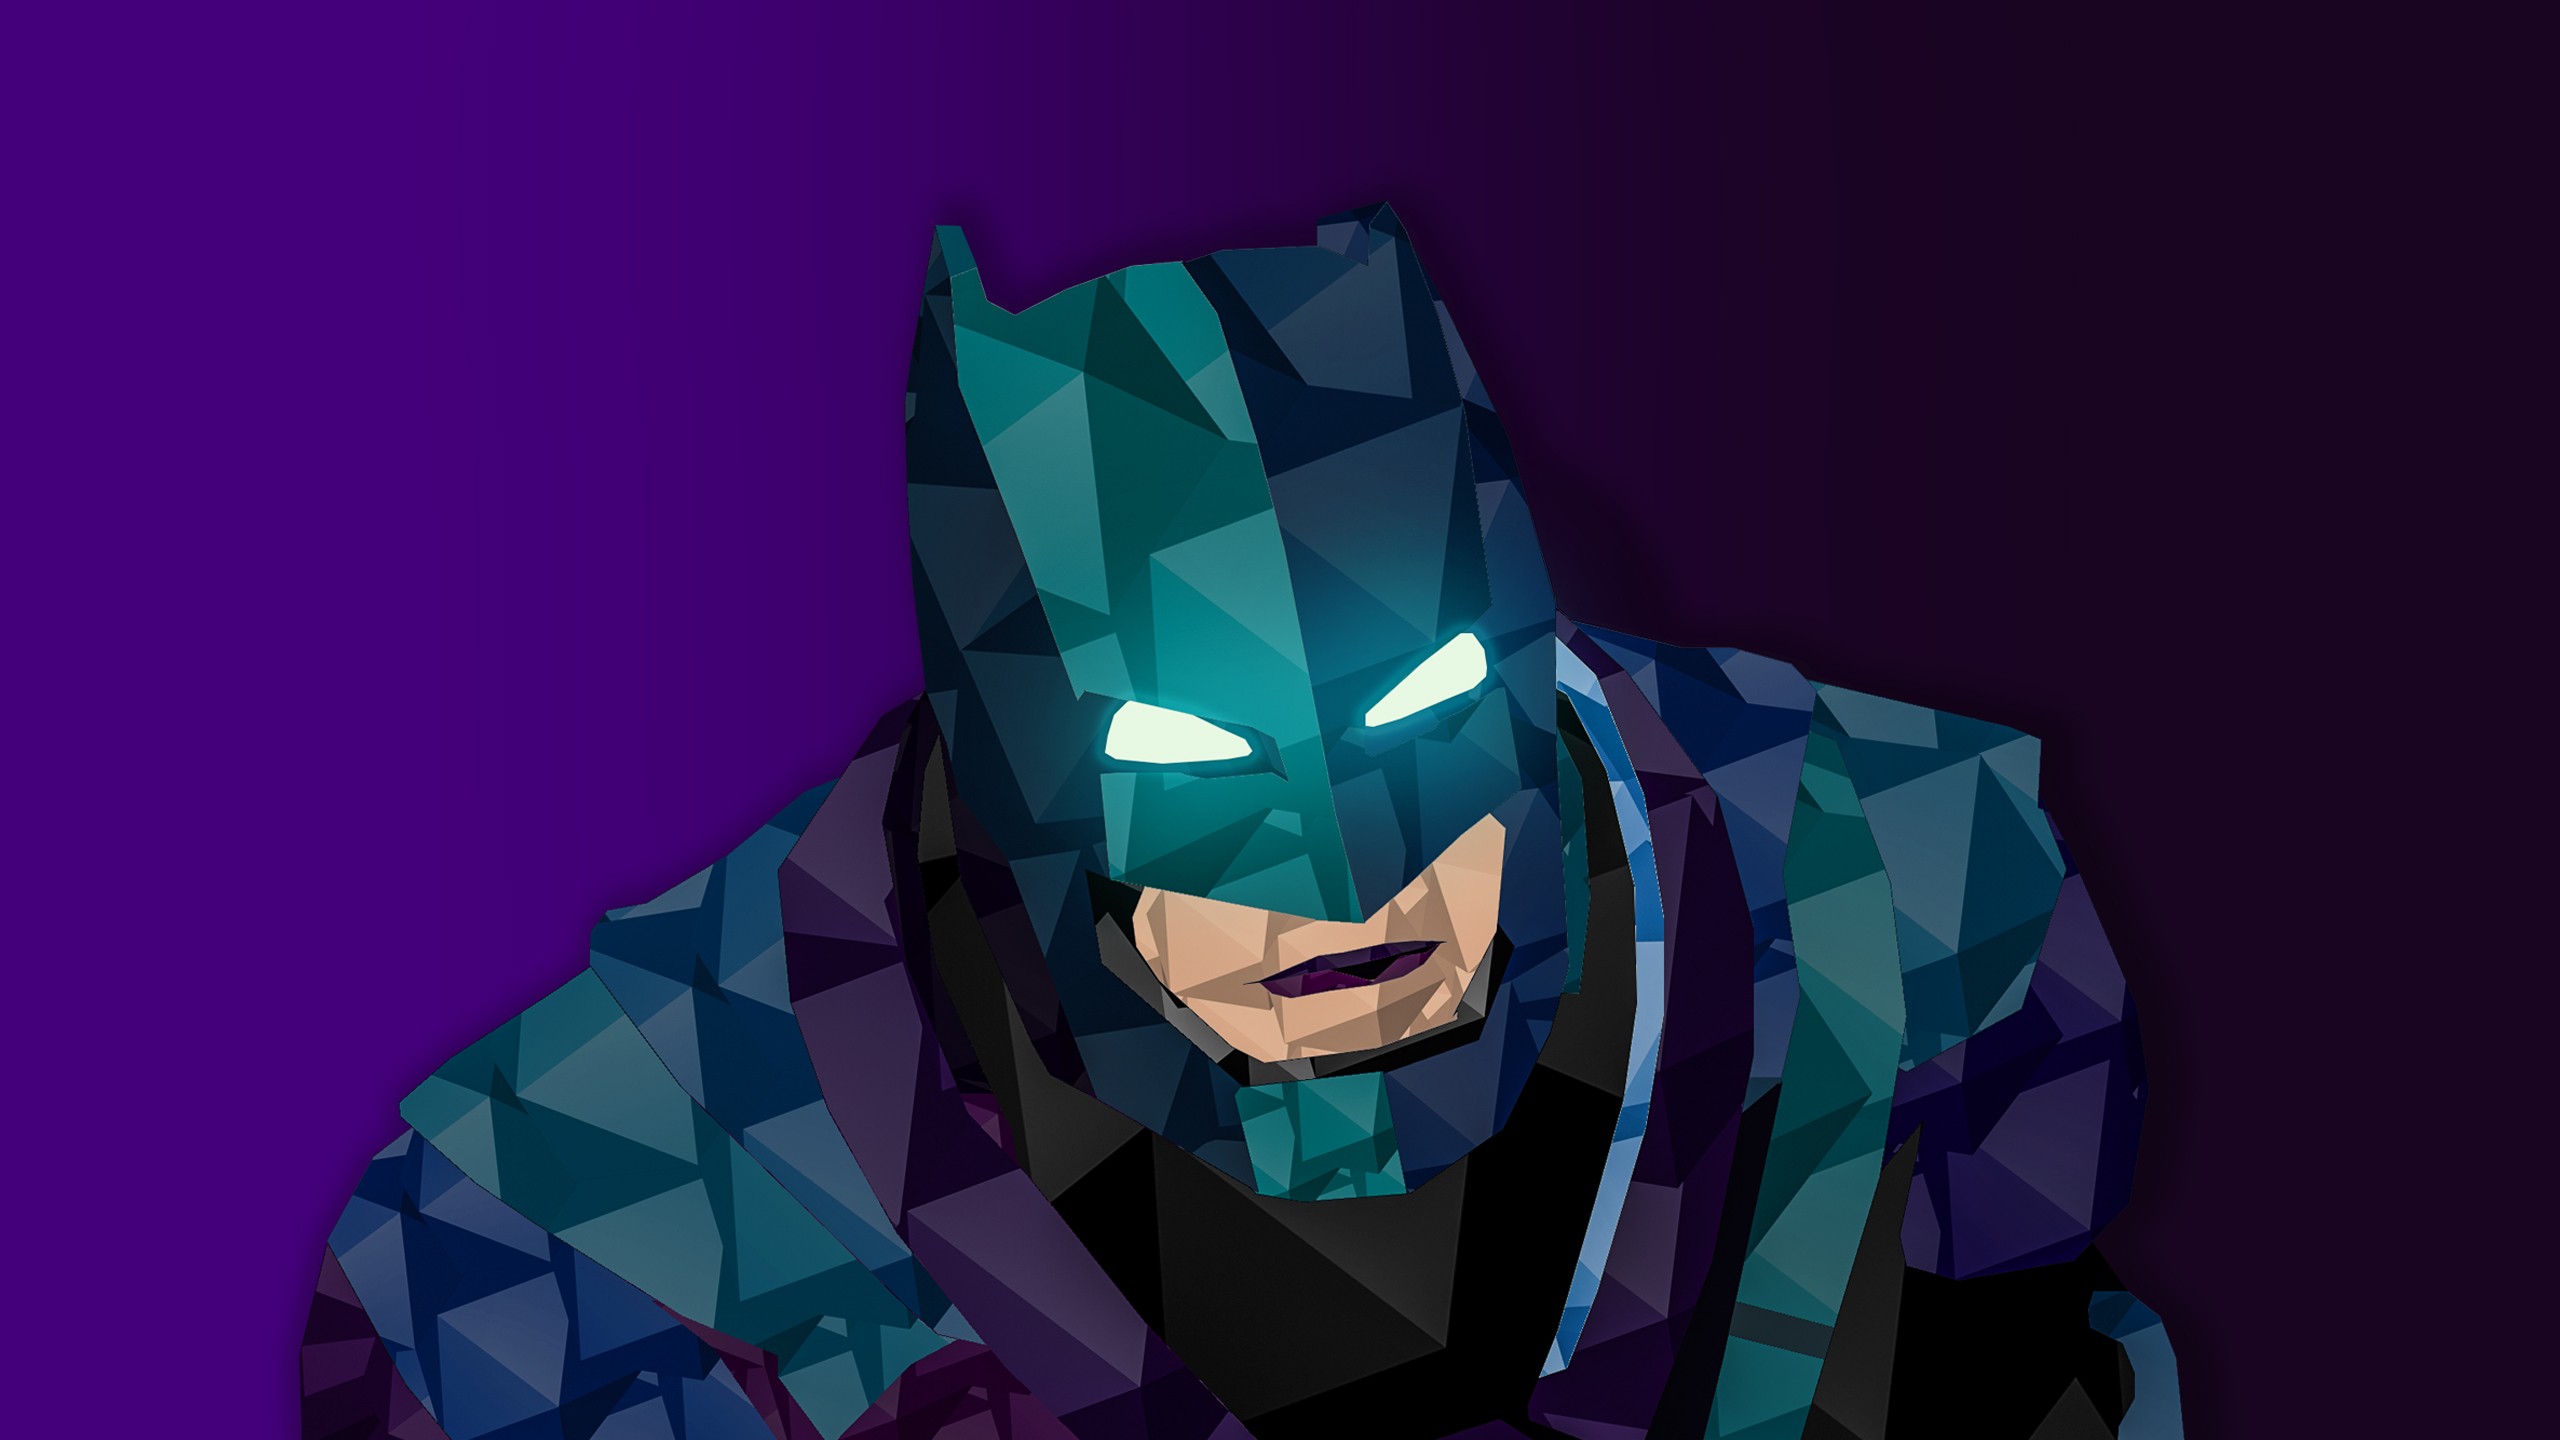 Batman, Batman v Superman: Dawn of Justice, DC Comics, Low poly, Digital art Wallpaper